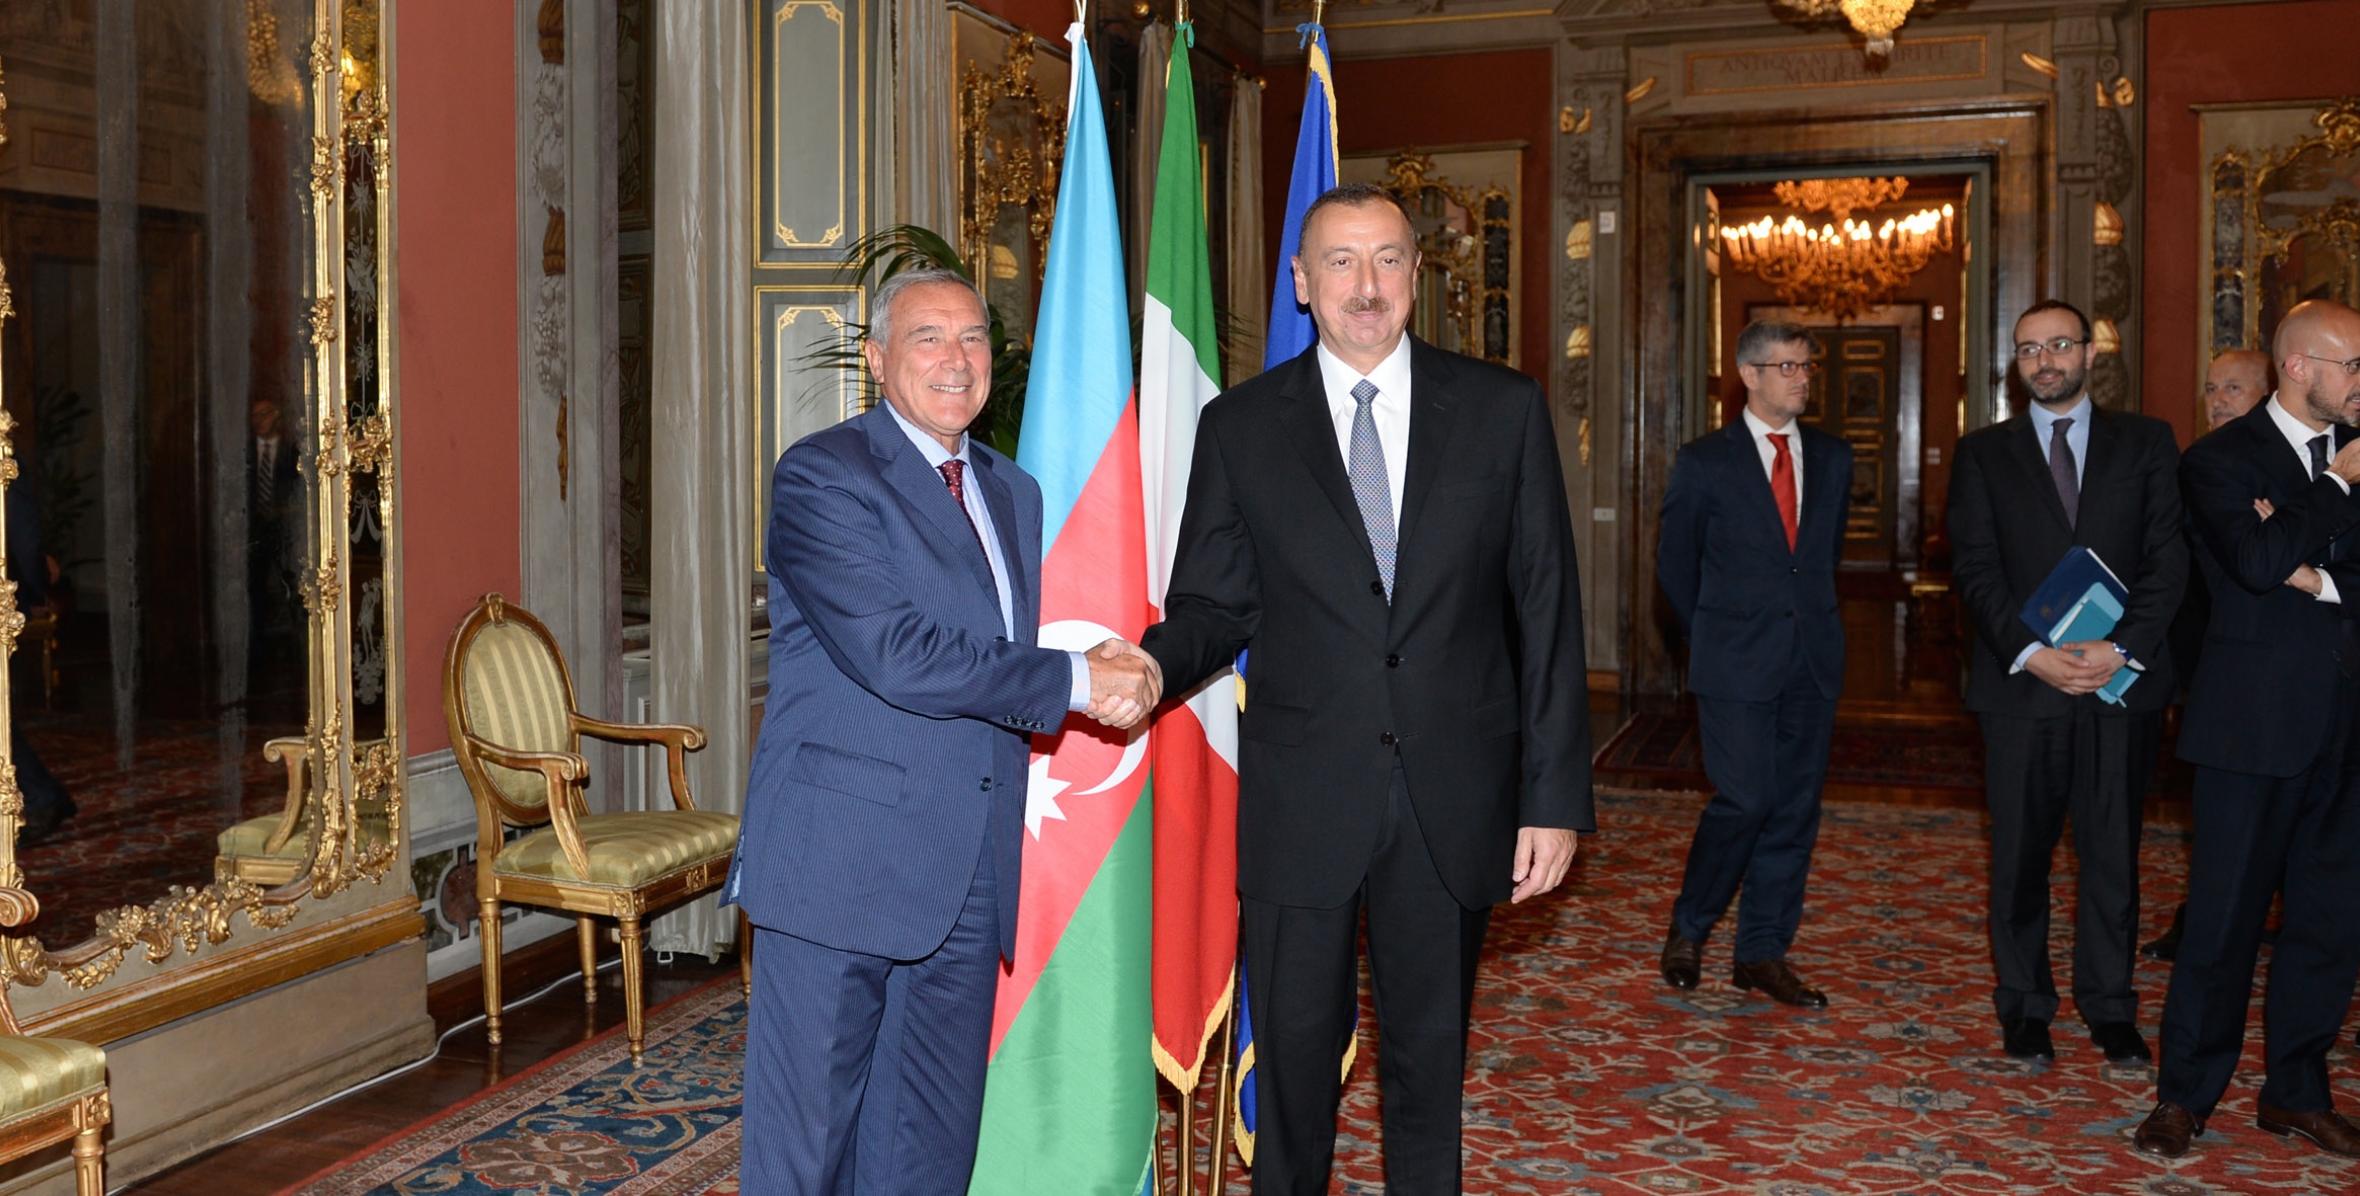 Ильхам Алиев встретился в Риме с председателем Сената Италии Пьетро Грассо